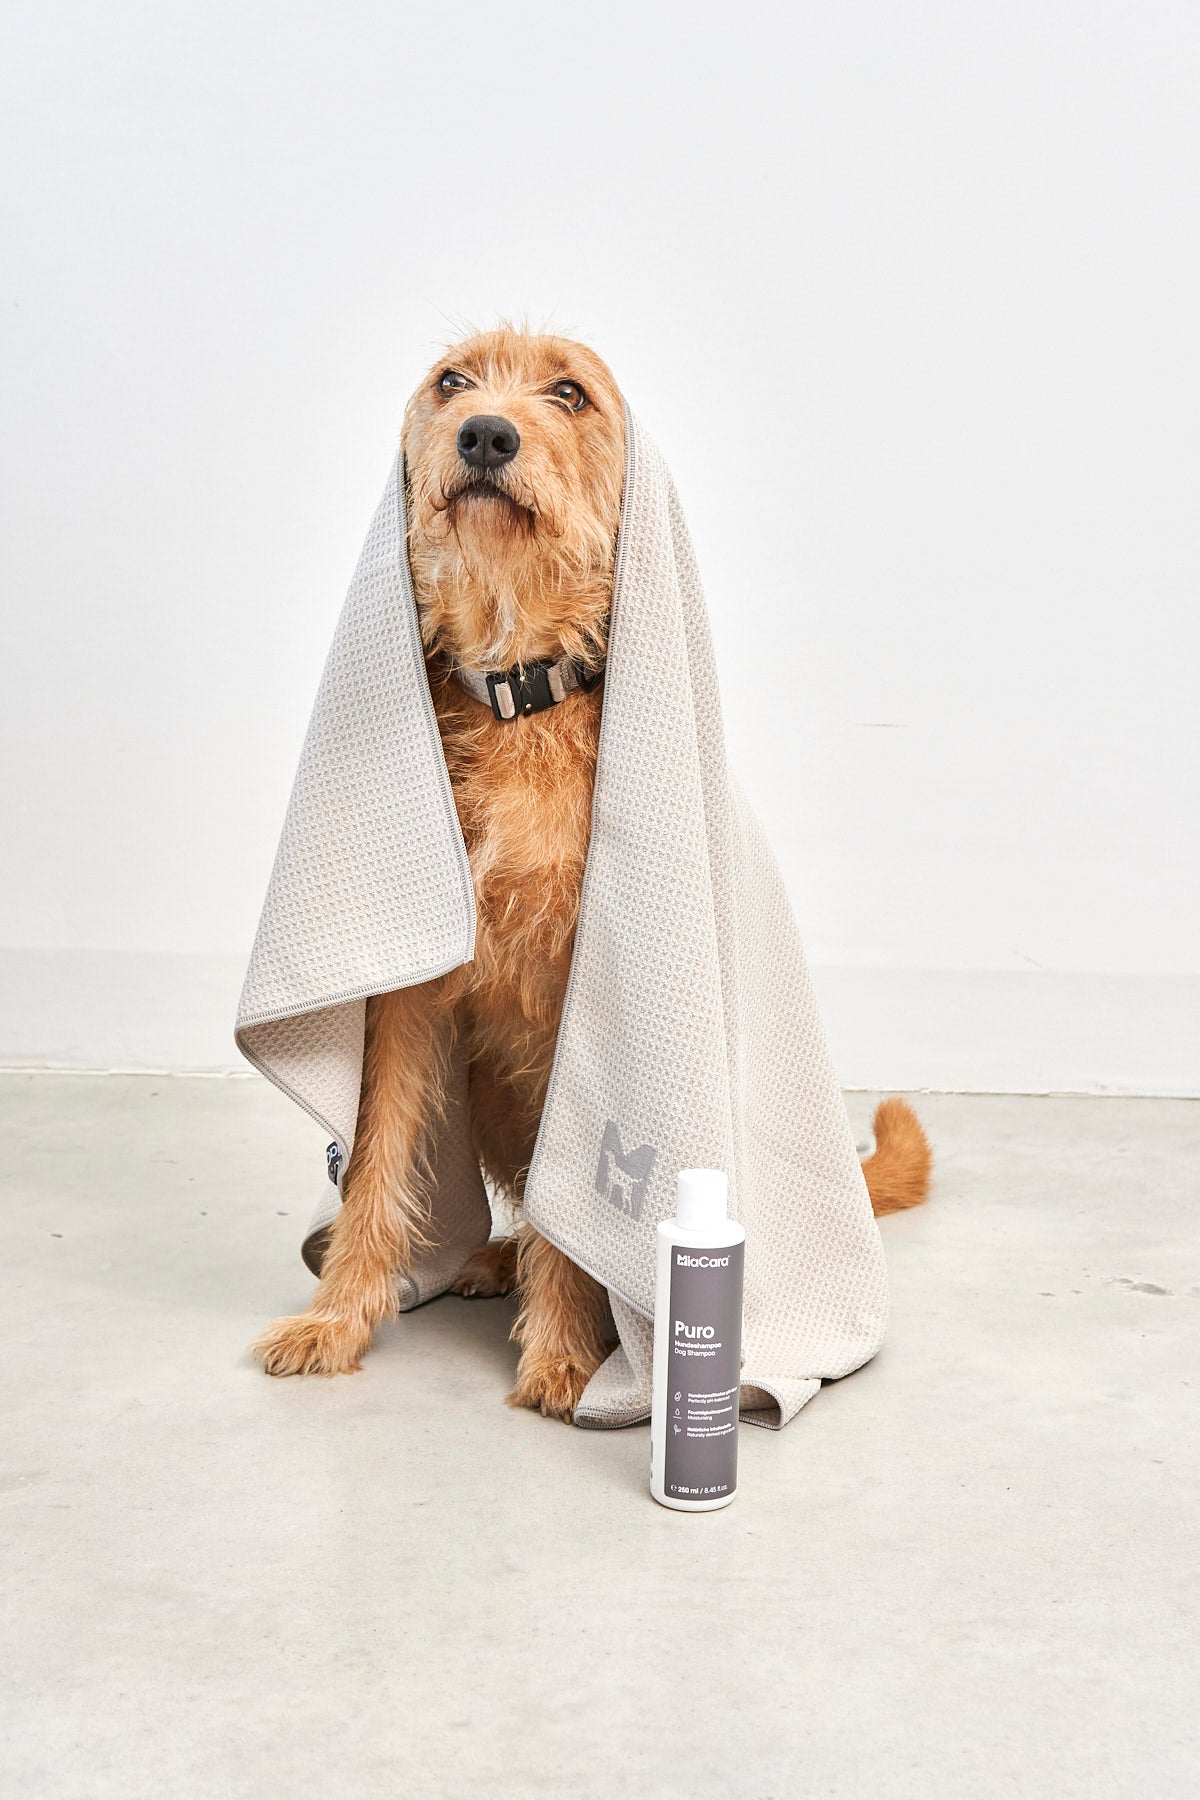 MiaCara Panno Hundetrockentuch Greige Handtuch für Hunde